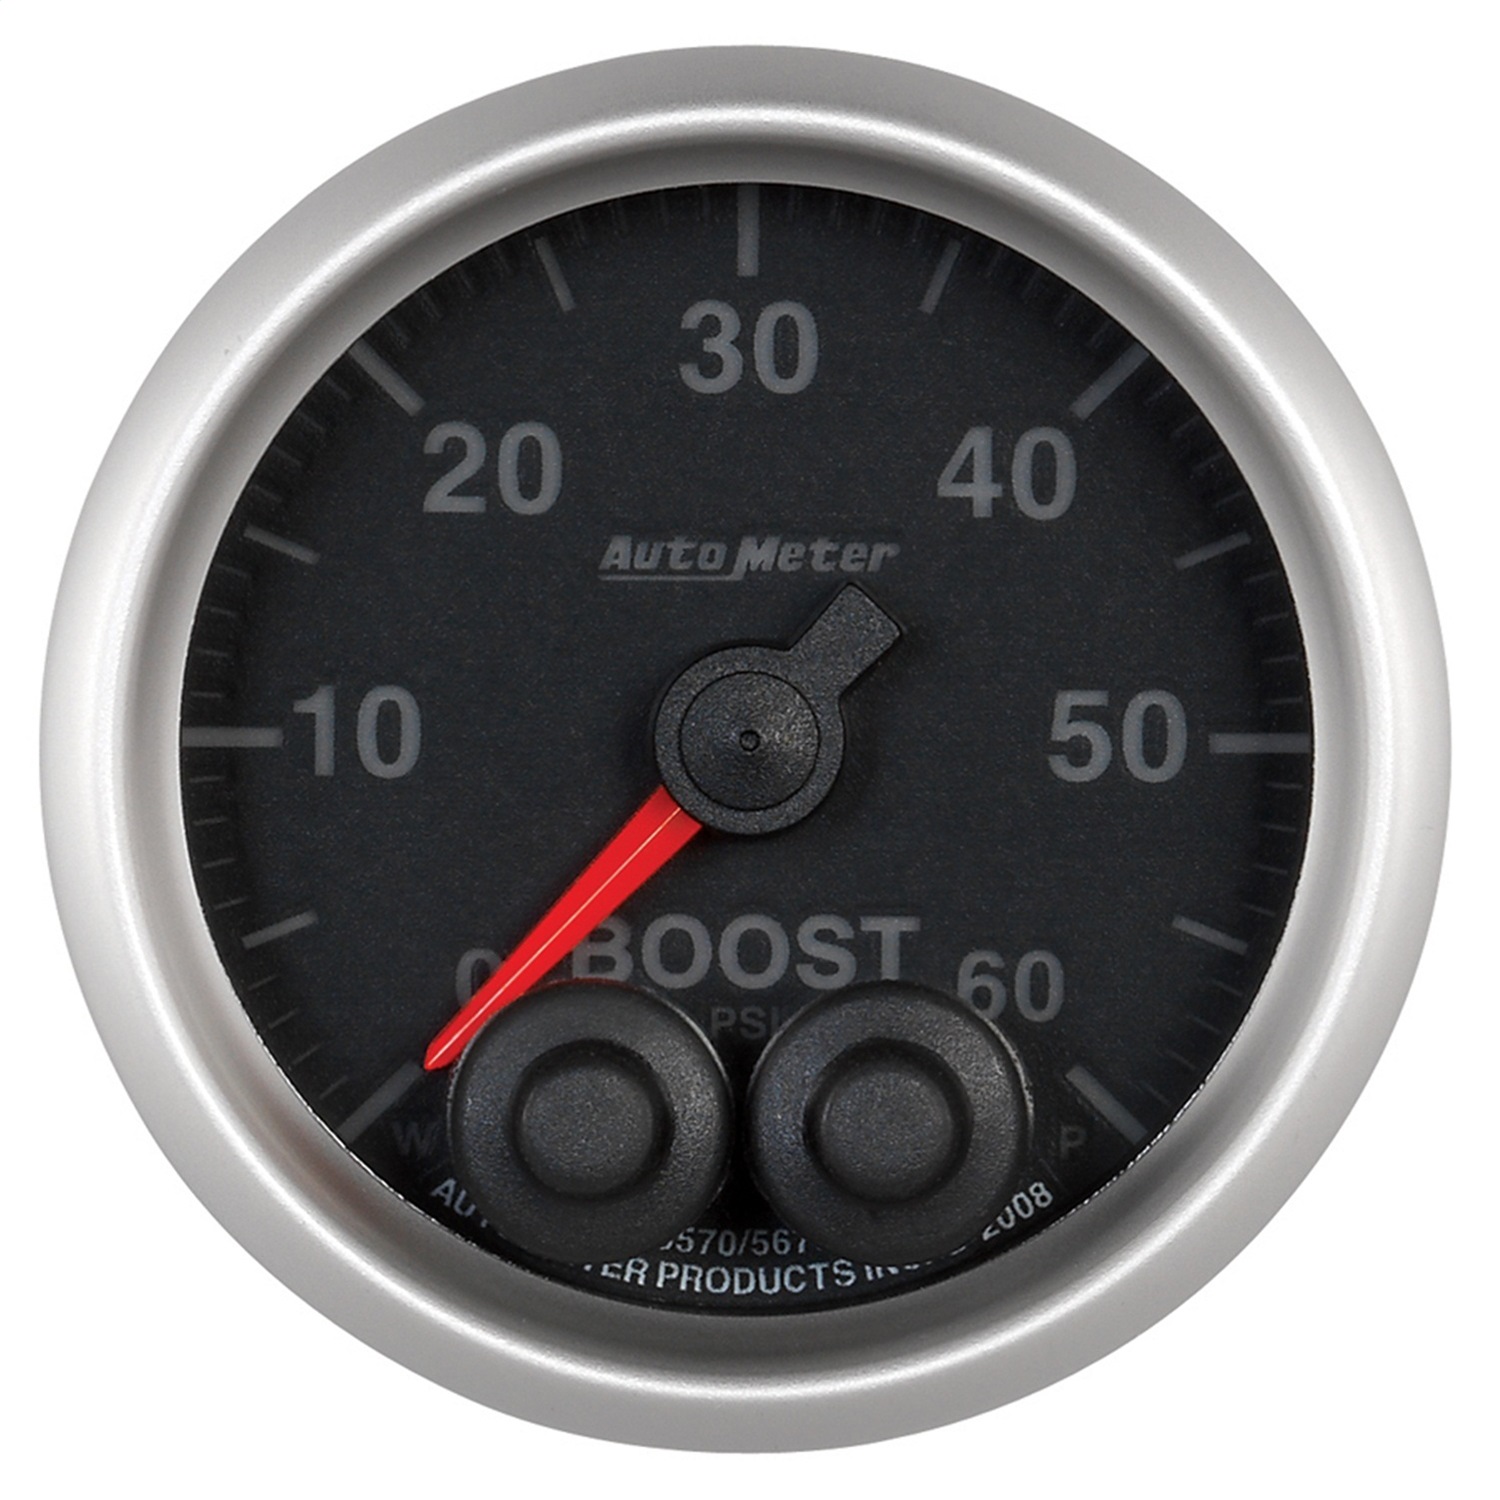 Auto Meter Auto Meter 5670 Elite Series; Boost Gauge